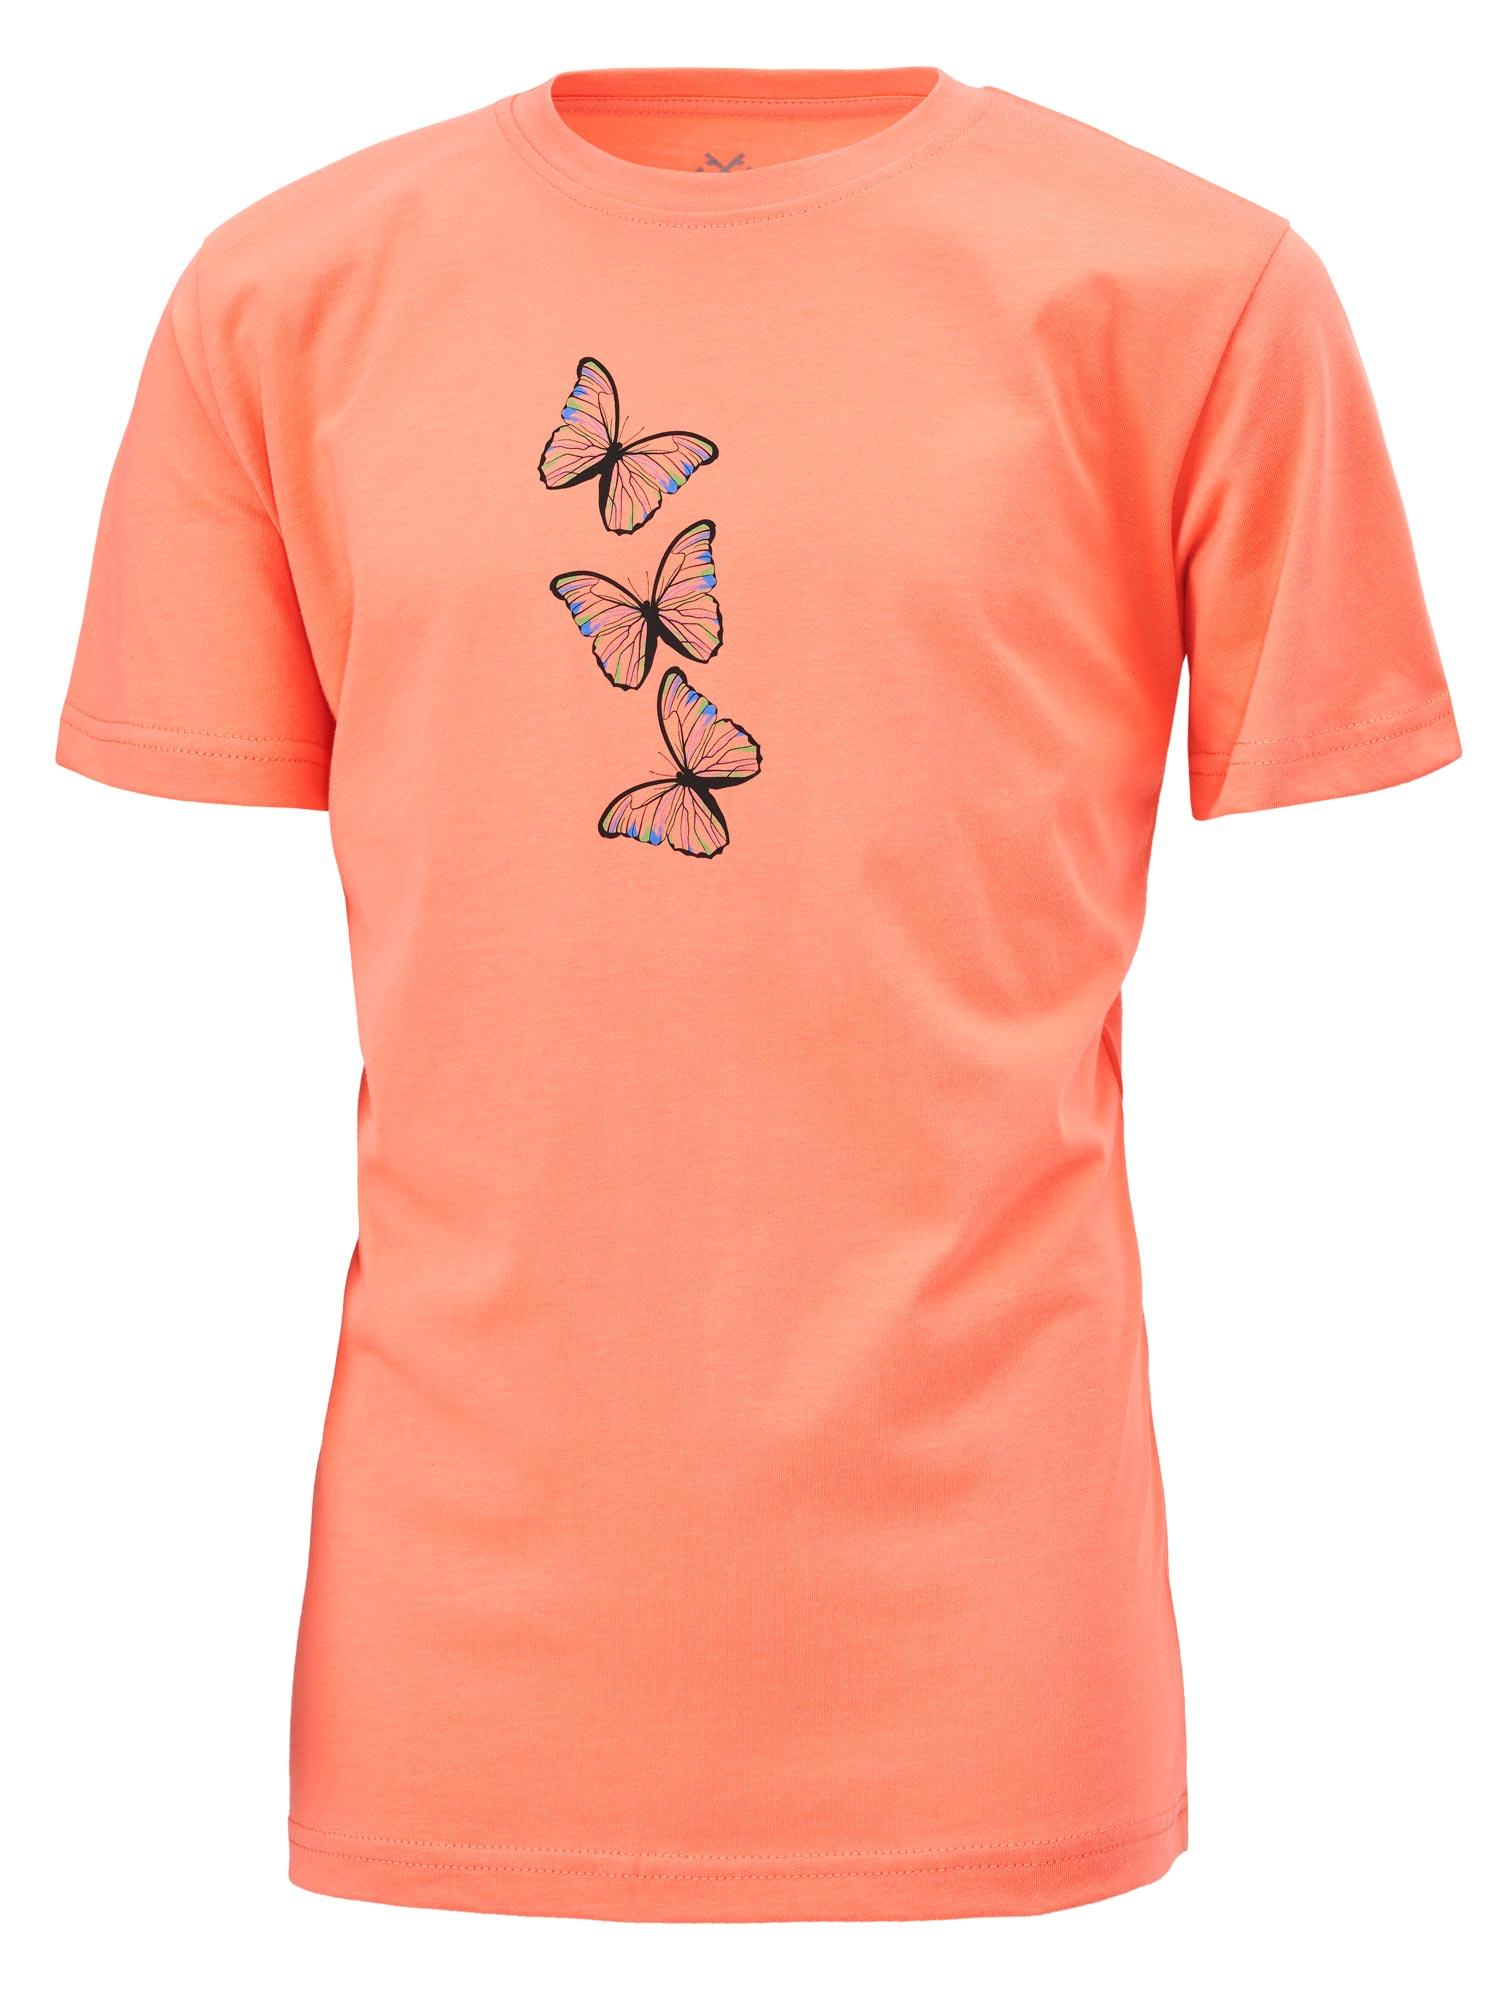 Selected image for BRILLE Majica za devojčice Cute narandžasta